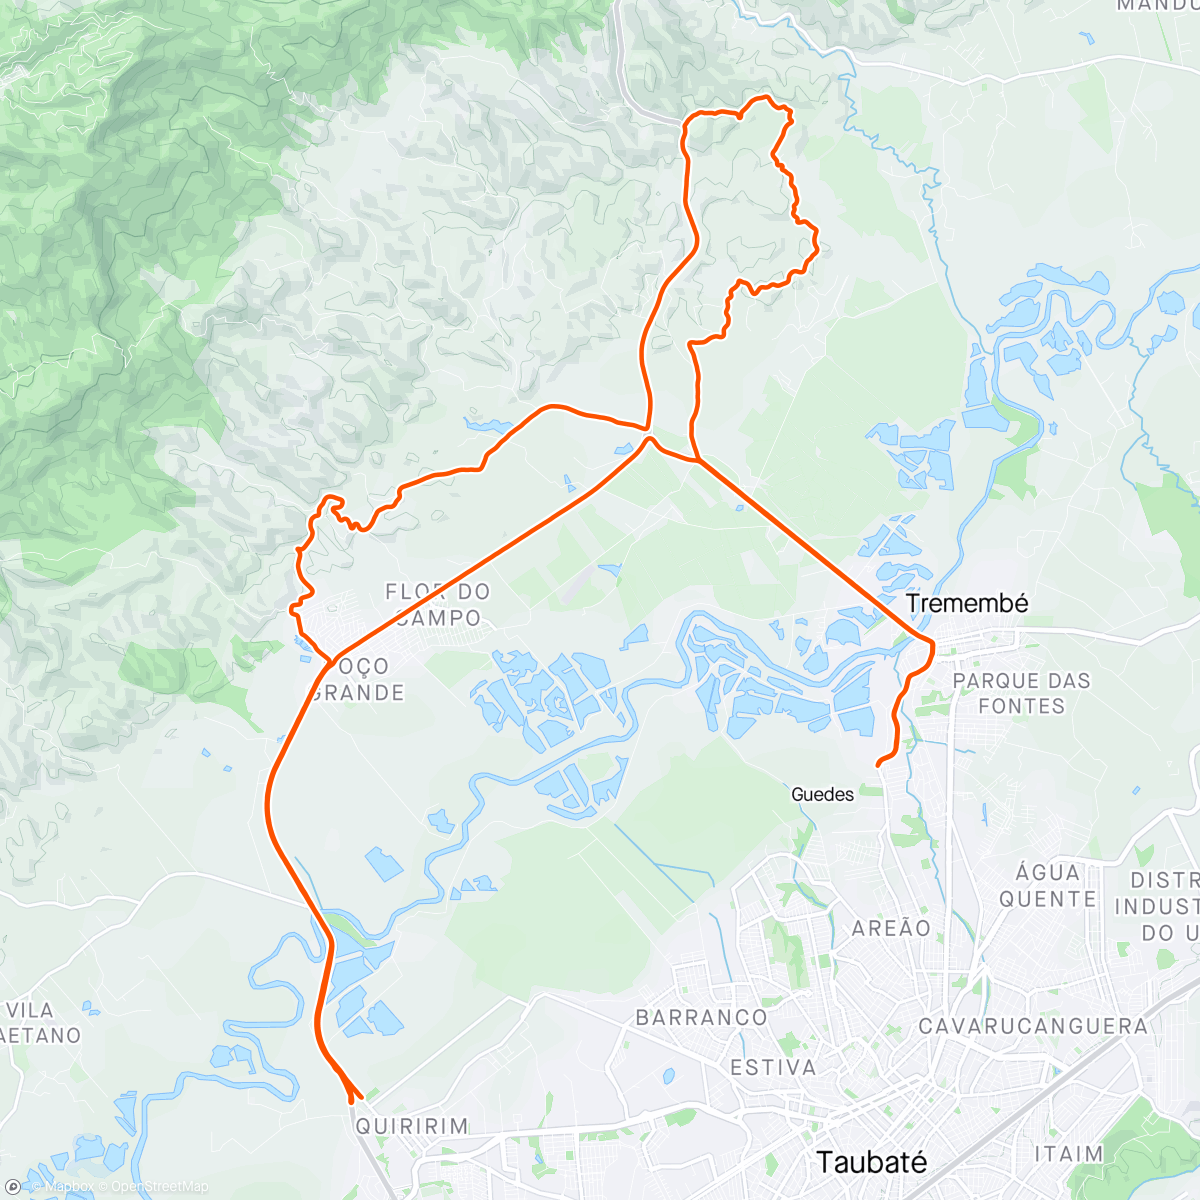 Map of the activity, Porteira amarela, Maristela quiririm